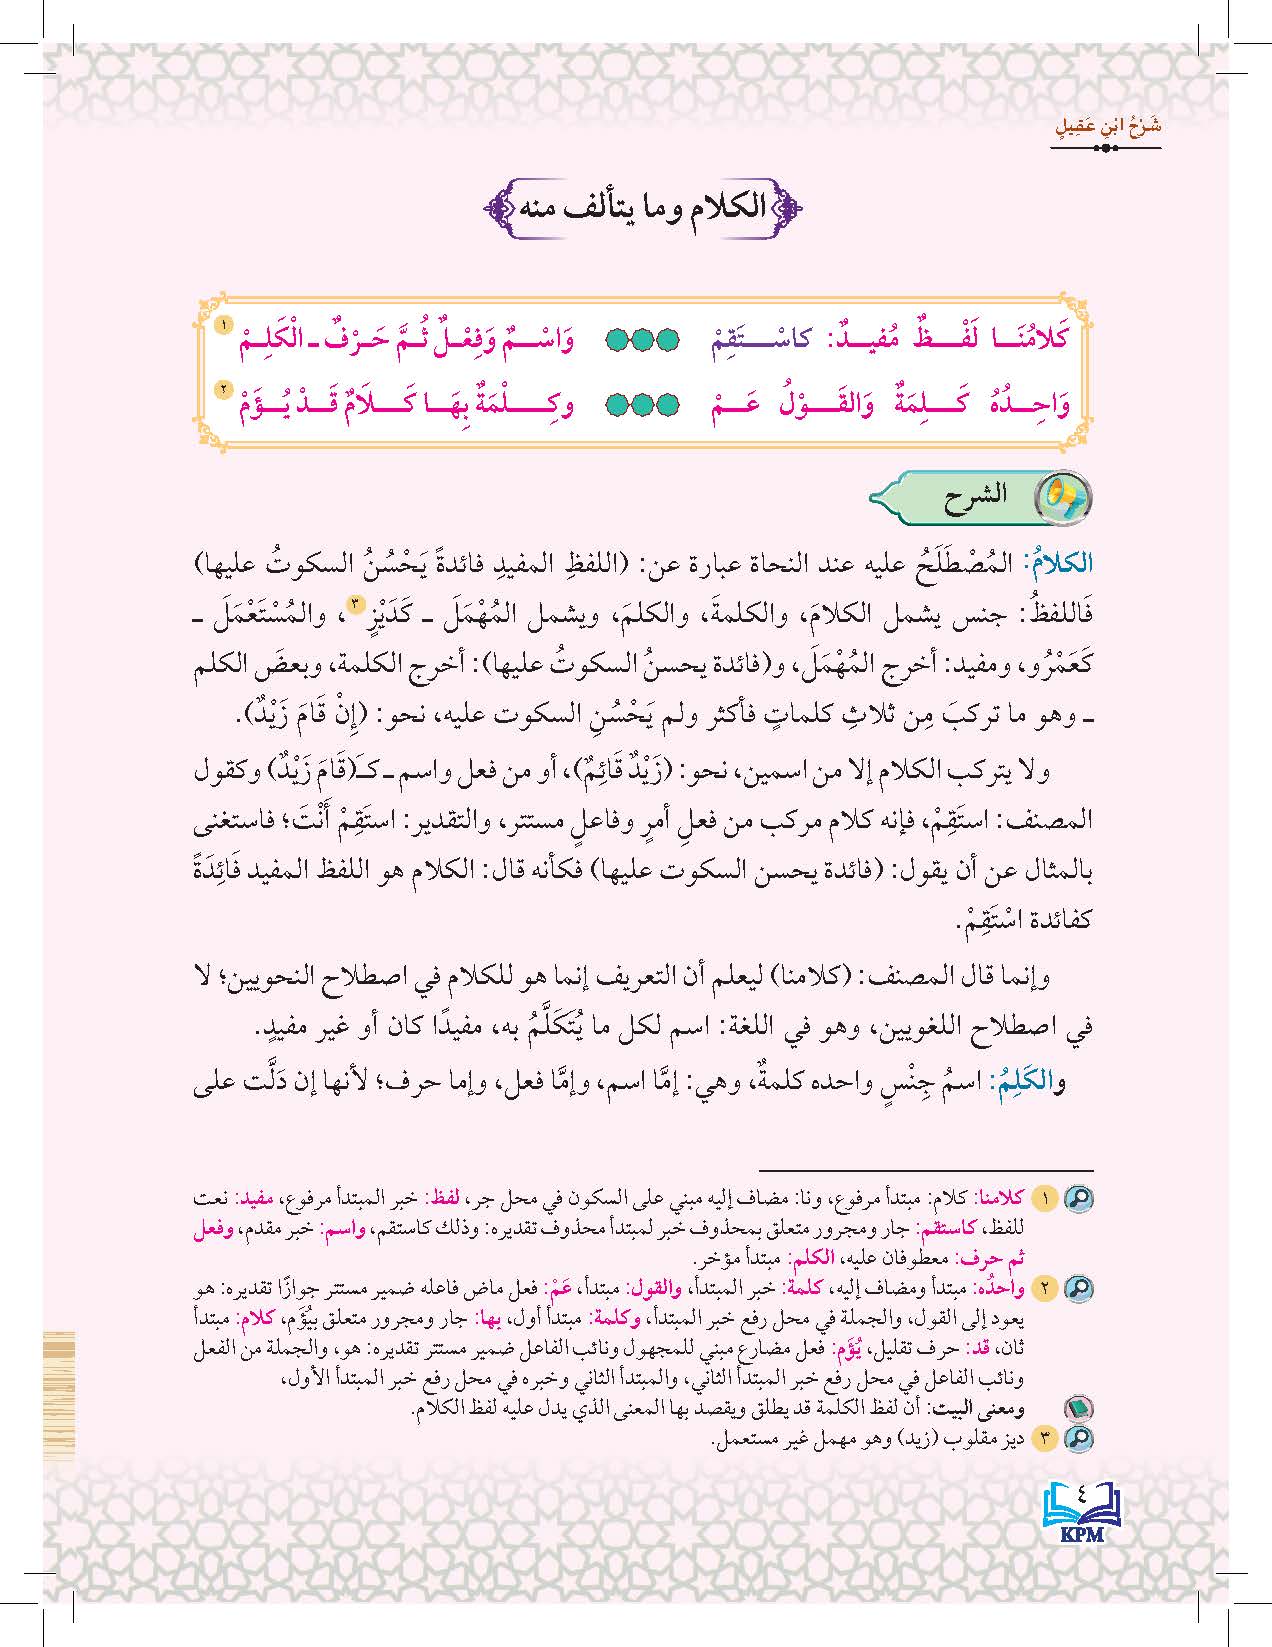 Syarah Ibnu Aqil Ala Alfiah Ibnu Malik Li Al Soffi Al Thani Al Thanawi - (FT604011)